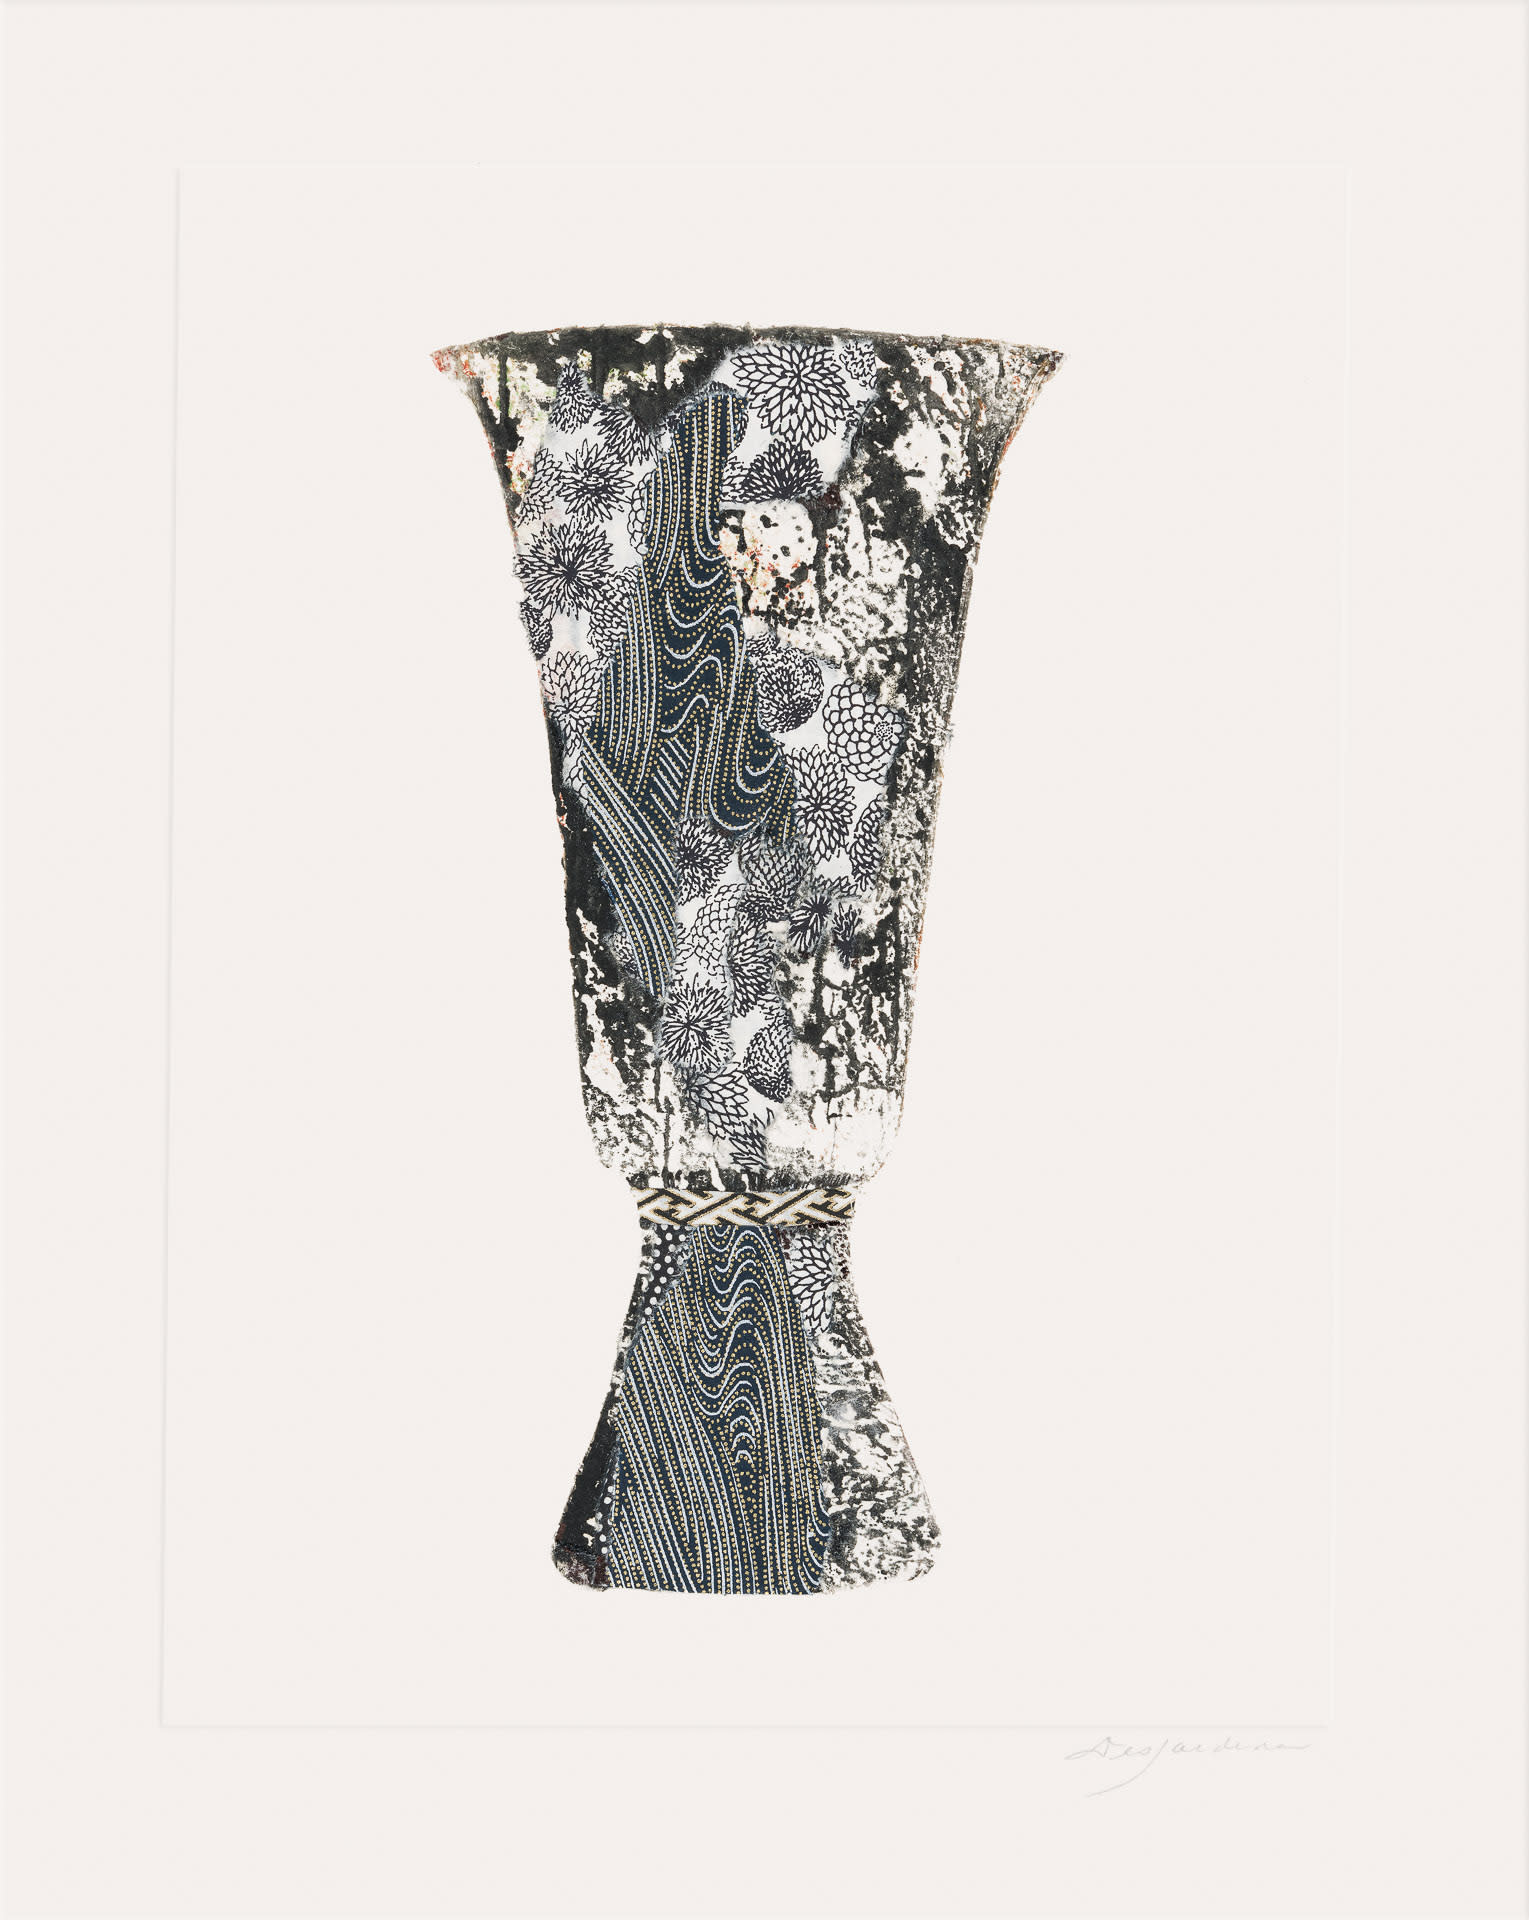 Vase i web fv67oo